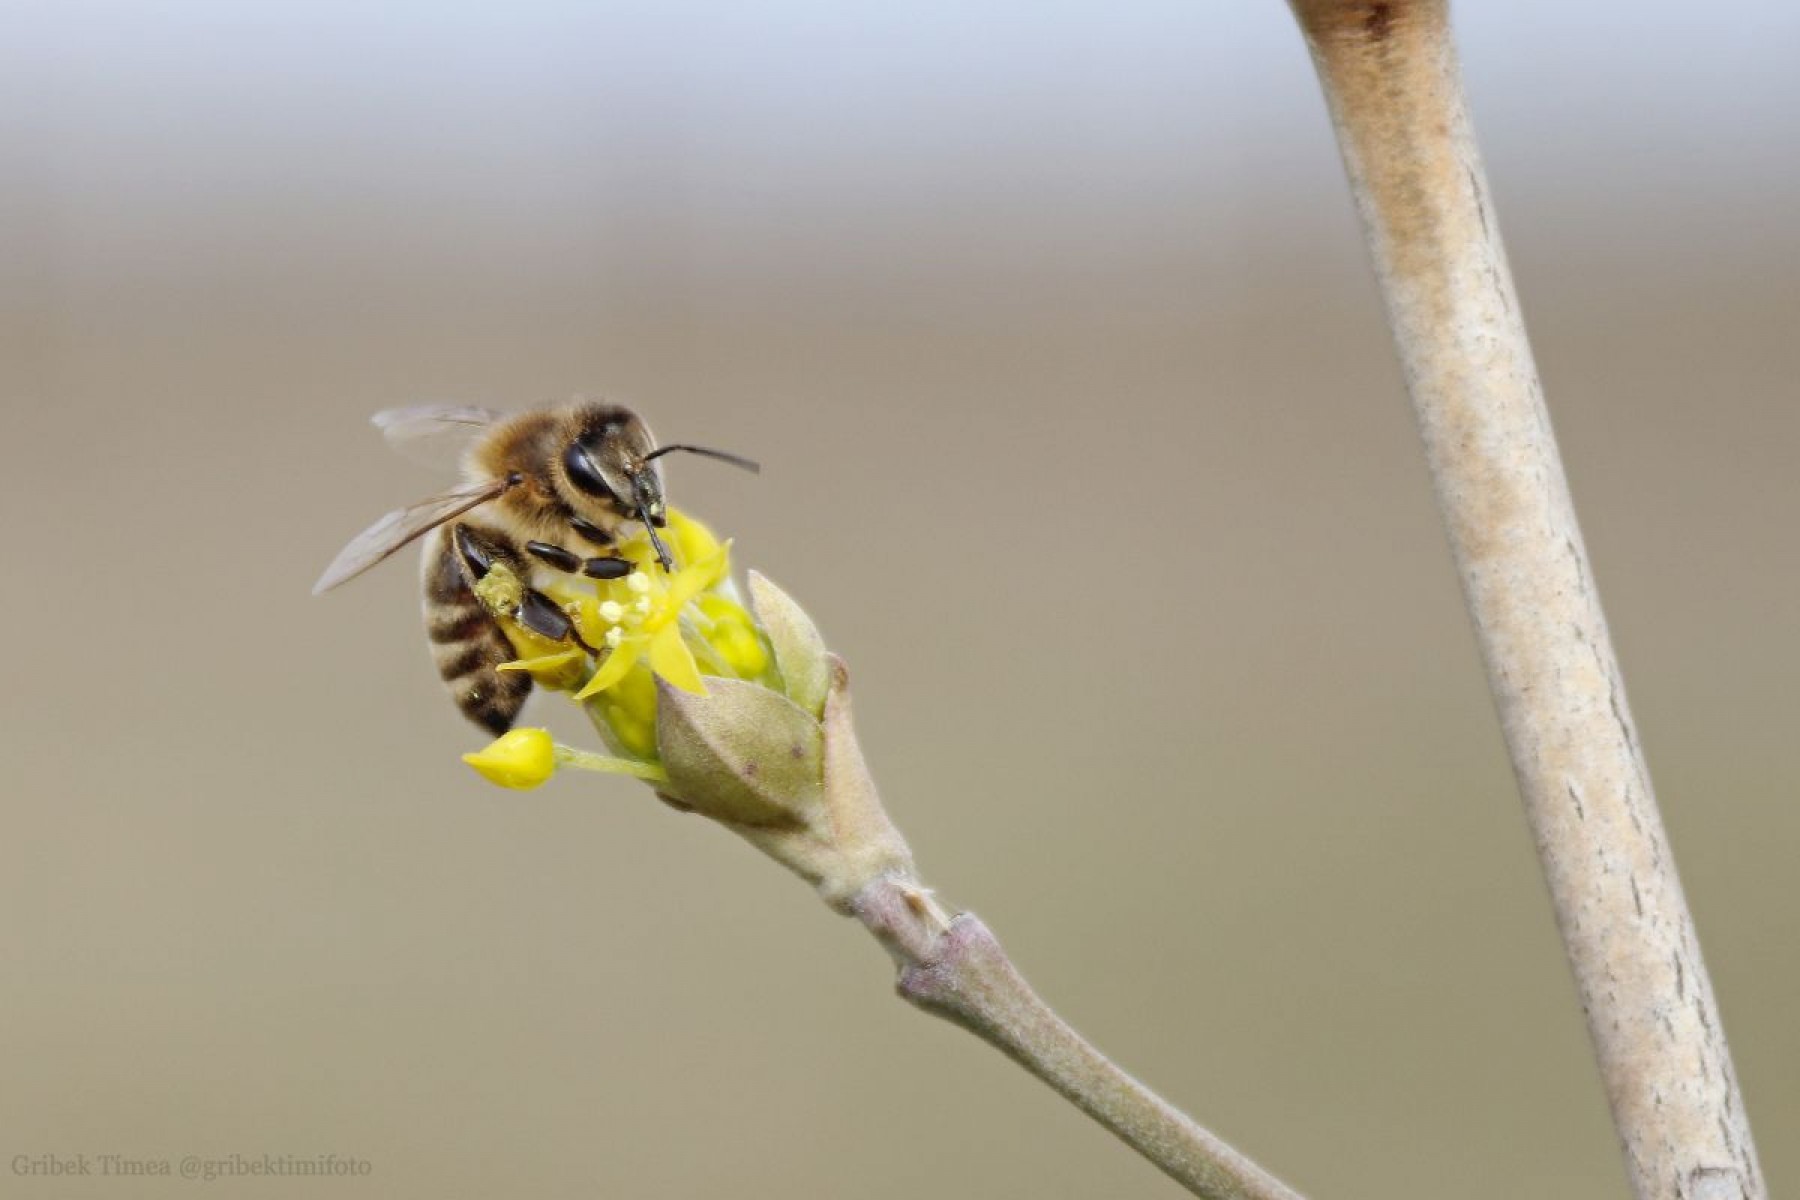 Hogyan befolyásolják az erdei ökoszisztémák a méhek életét?